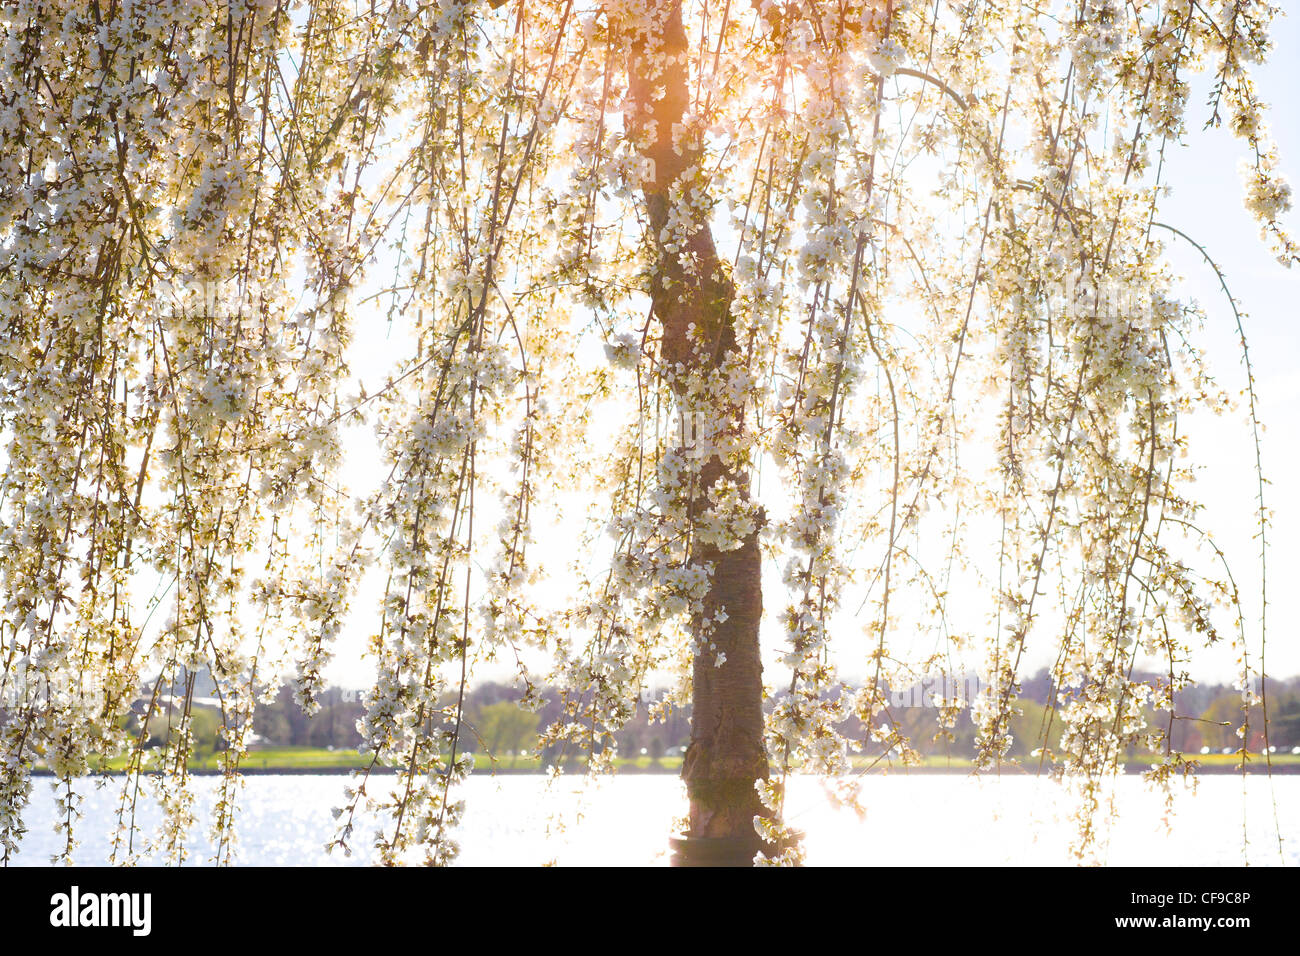 La rivière Potomac à Washington DC. La lumière du soleil qui brillait à travers les branches d'un arbre en fleur de cerisier pleureur pointe pleine floraison. Banque D'Images